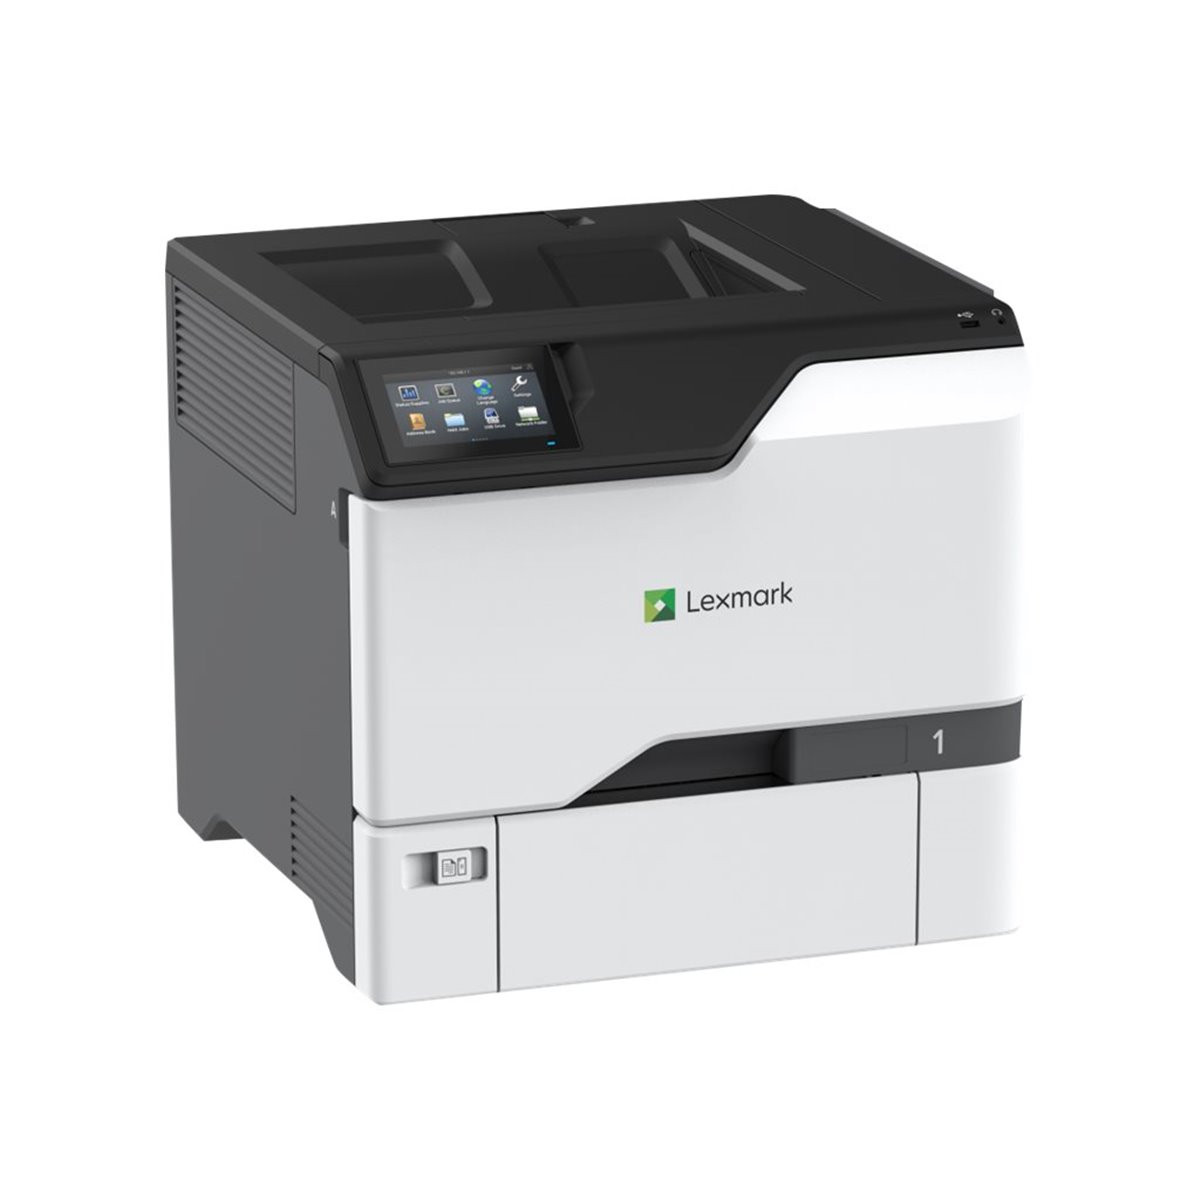 Lexmark C4352 A4 Color Laser Printer 50ppm - Laser-Led - Colored